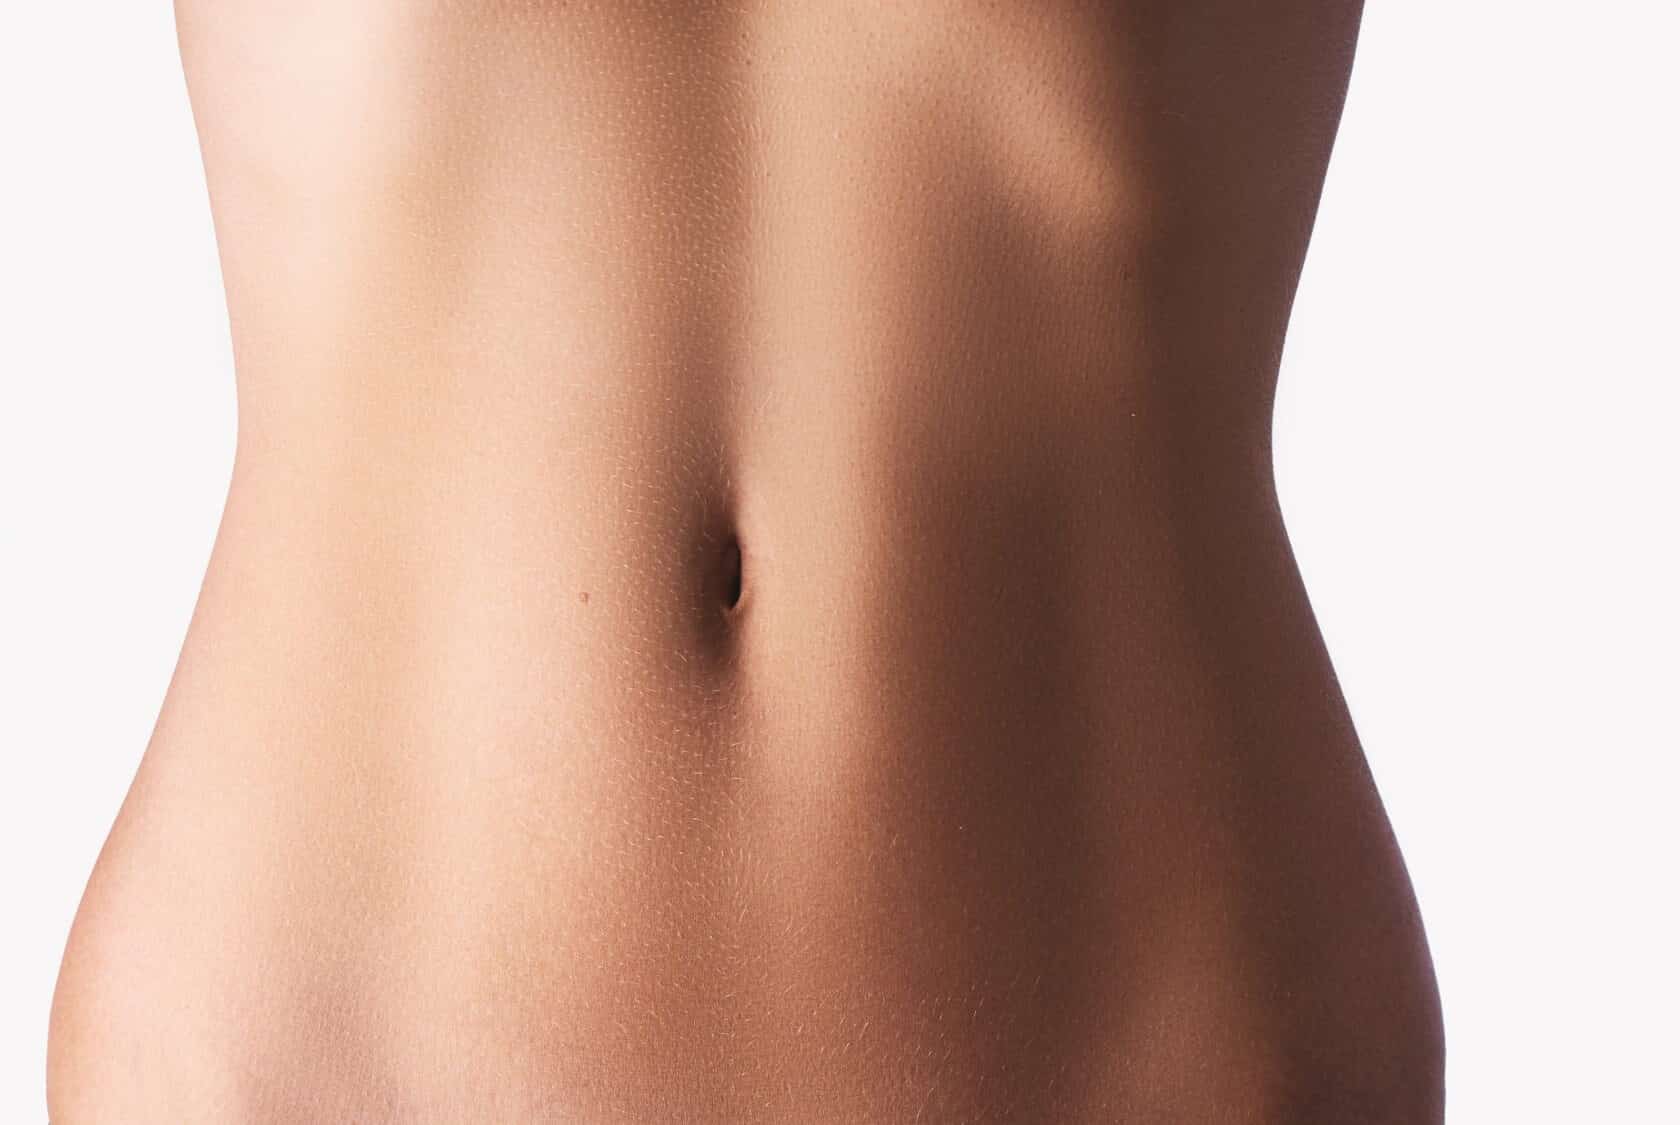 Skinny nipples tits ribs flat stomach